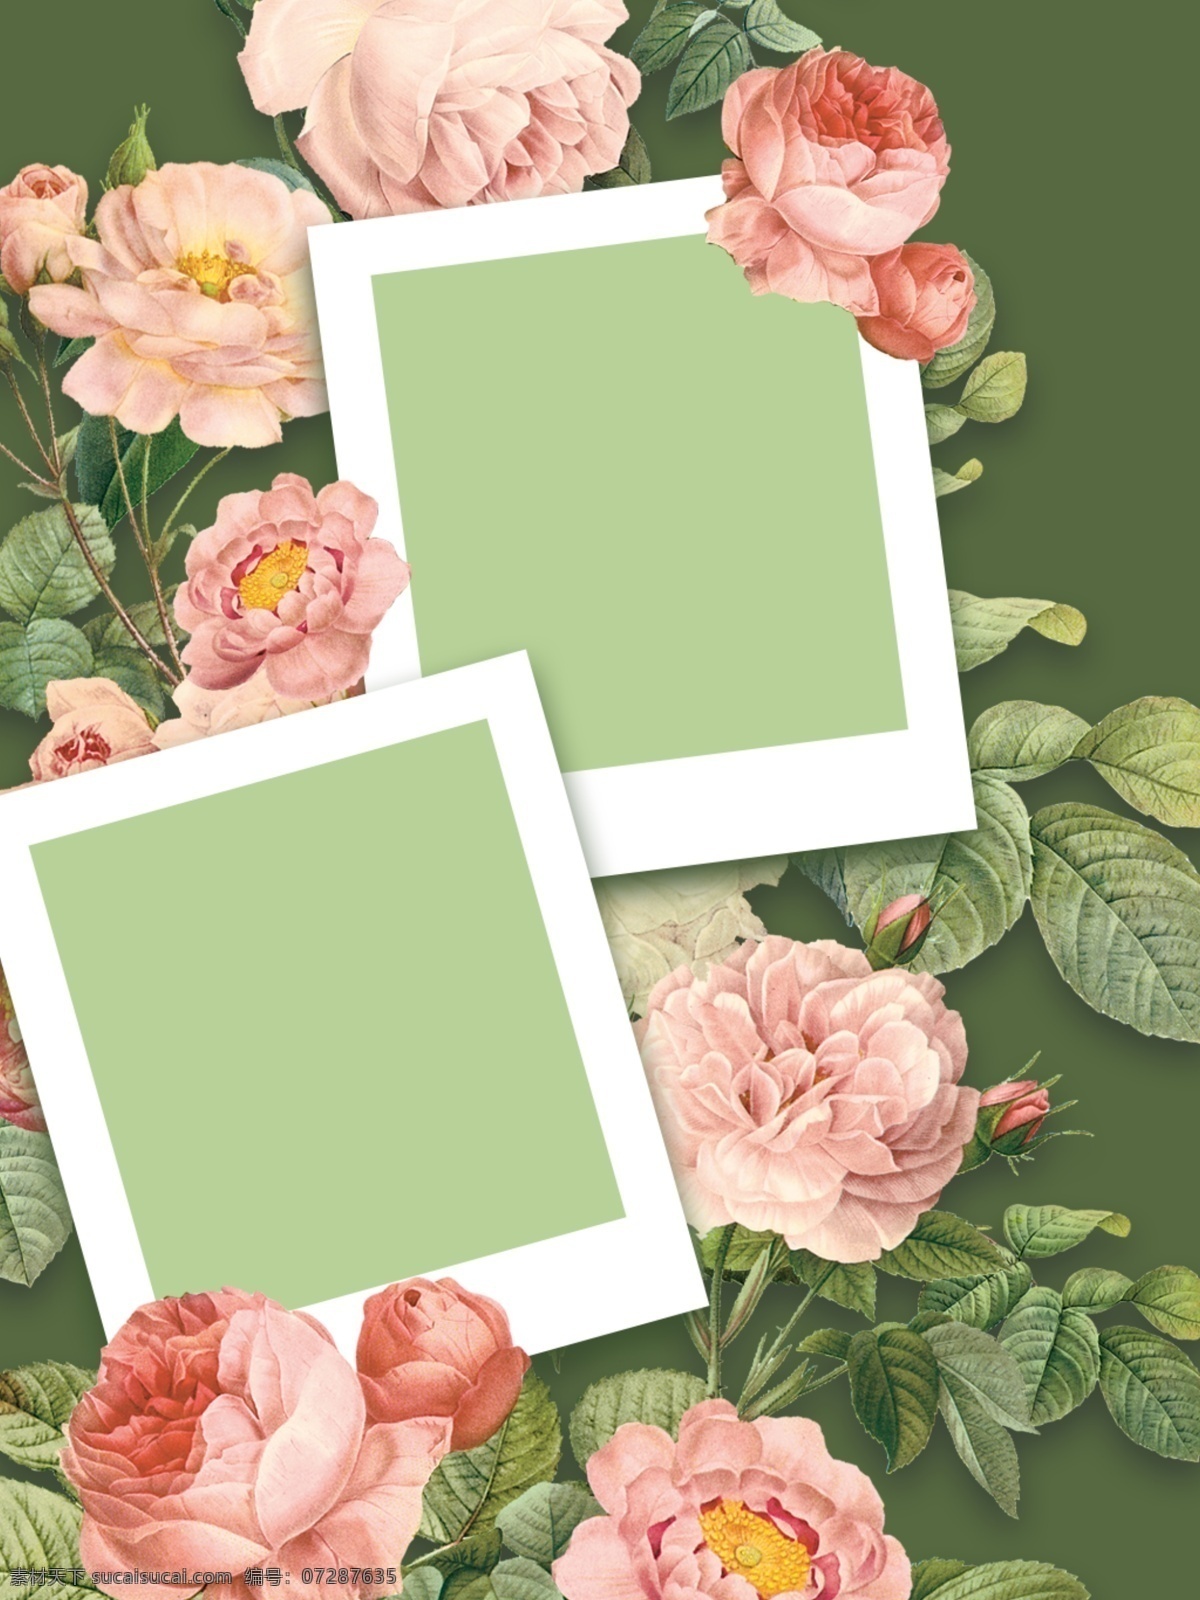 全 原创 花卉 相片 框 背景 花卉植物 植物 花卉背景 相片框 鲜花绿植